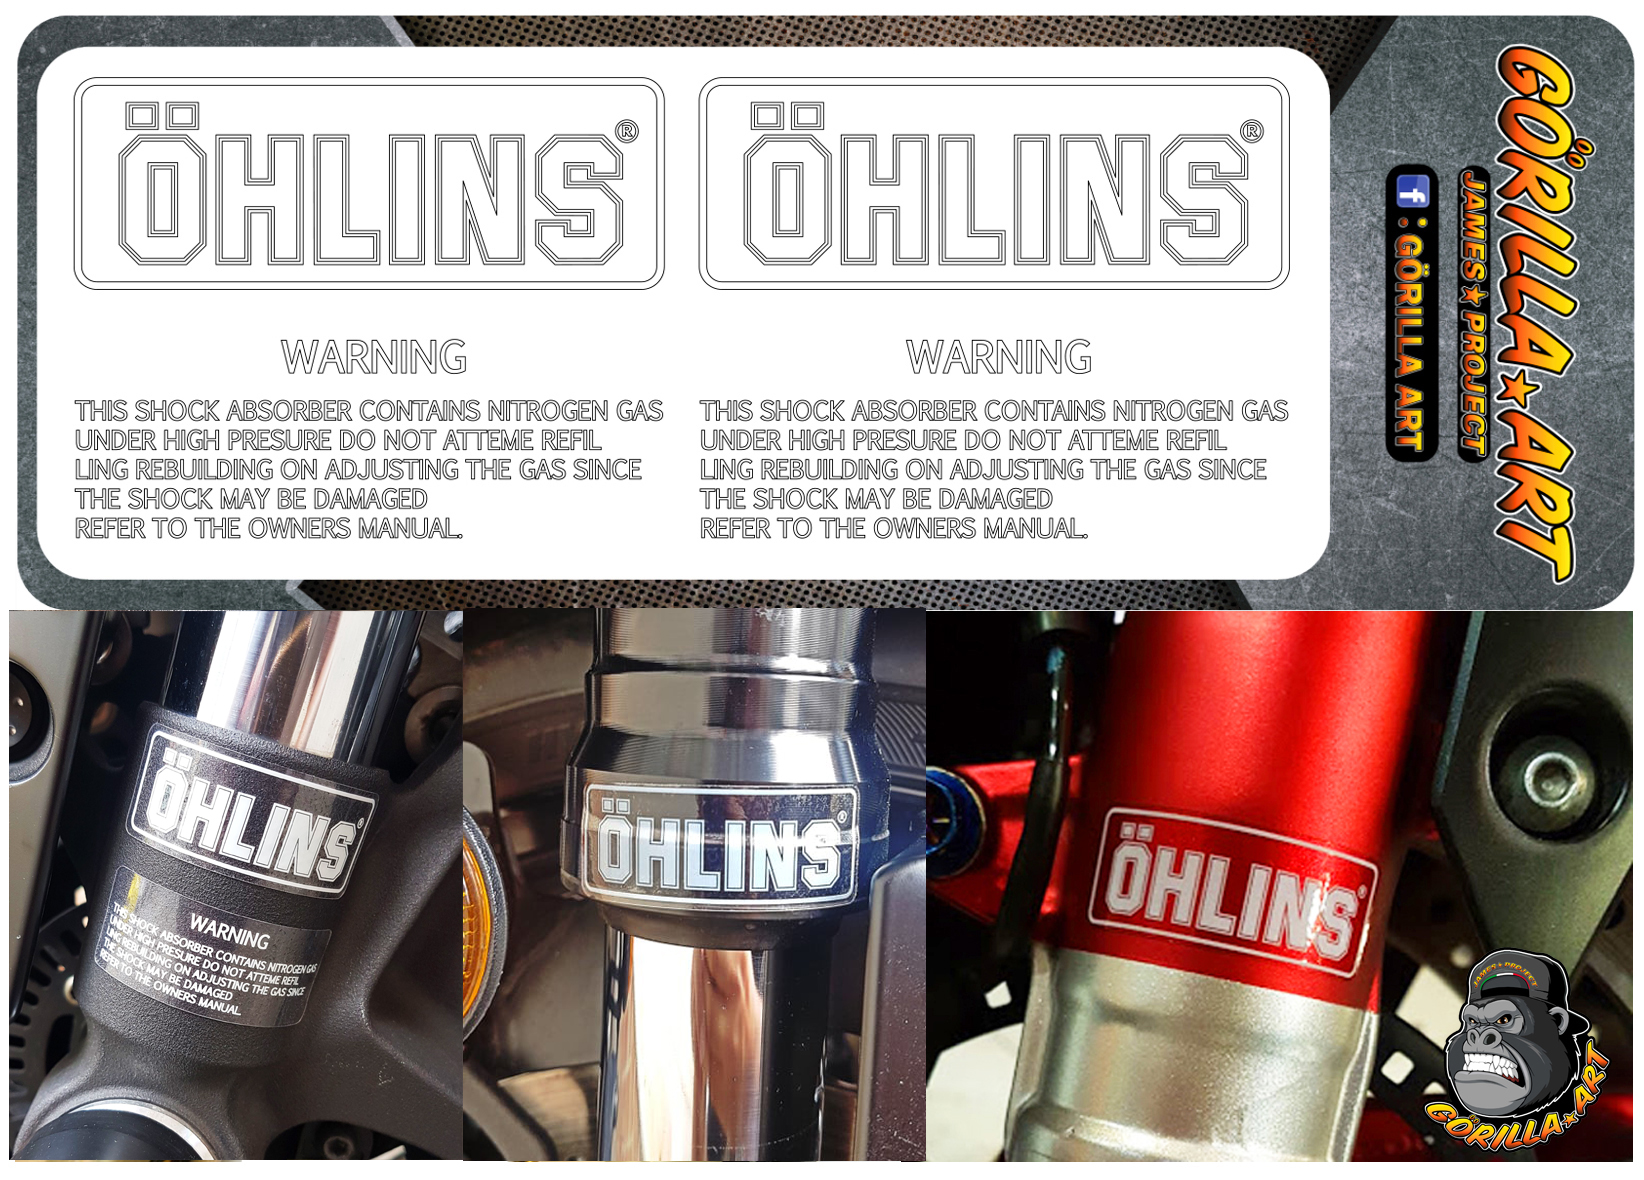 สติ๊กเกอร์ติด โช๊ค Ohlins v-1 Sticker เกรดพรีเมี่ยม ( พื้นใสอักษรขาว ) /  Motorcycle Sticker shock absorber  Ohlins